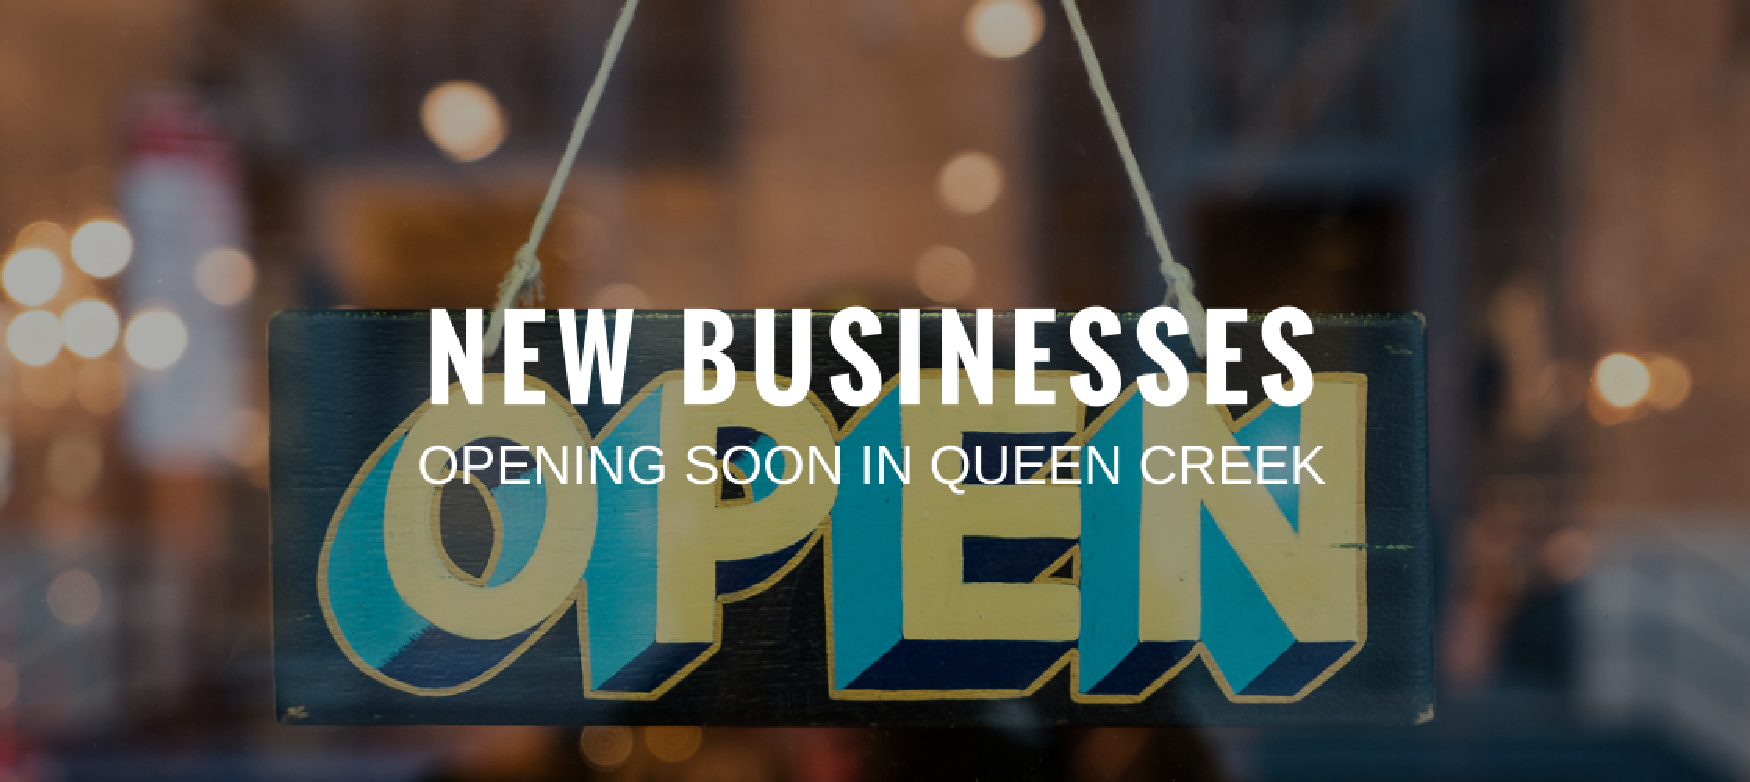 new-businesses-opening-soon-in-queen-creek